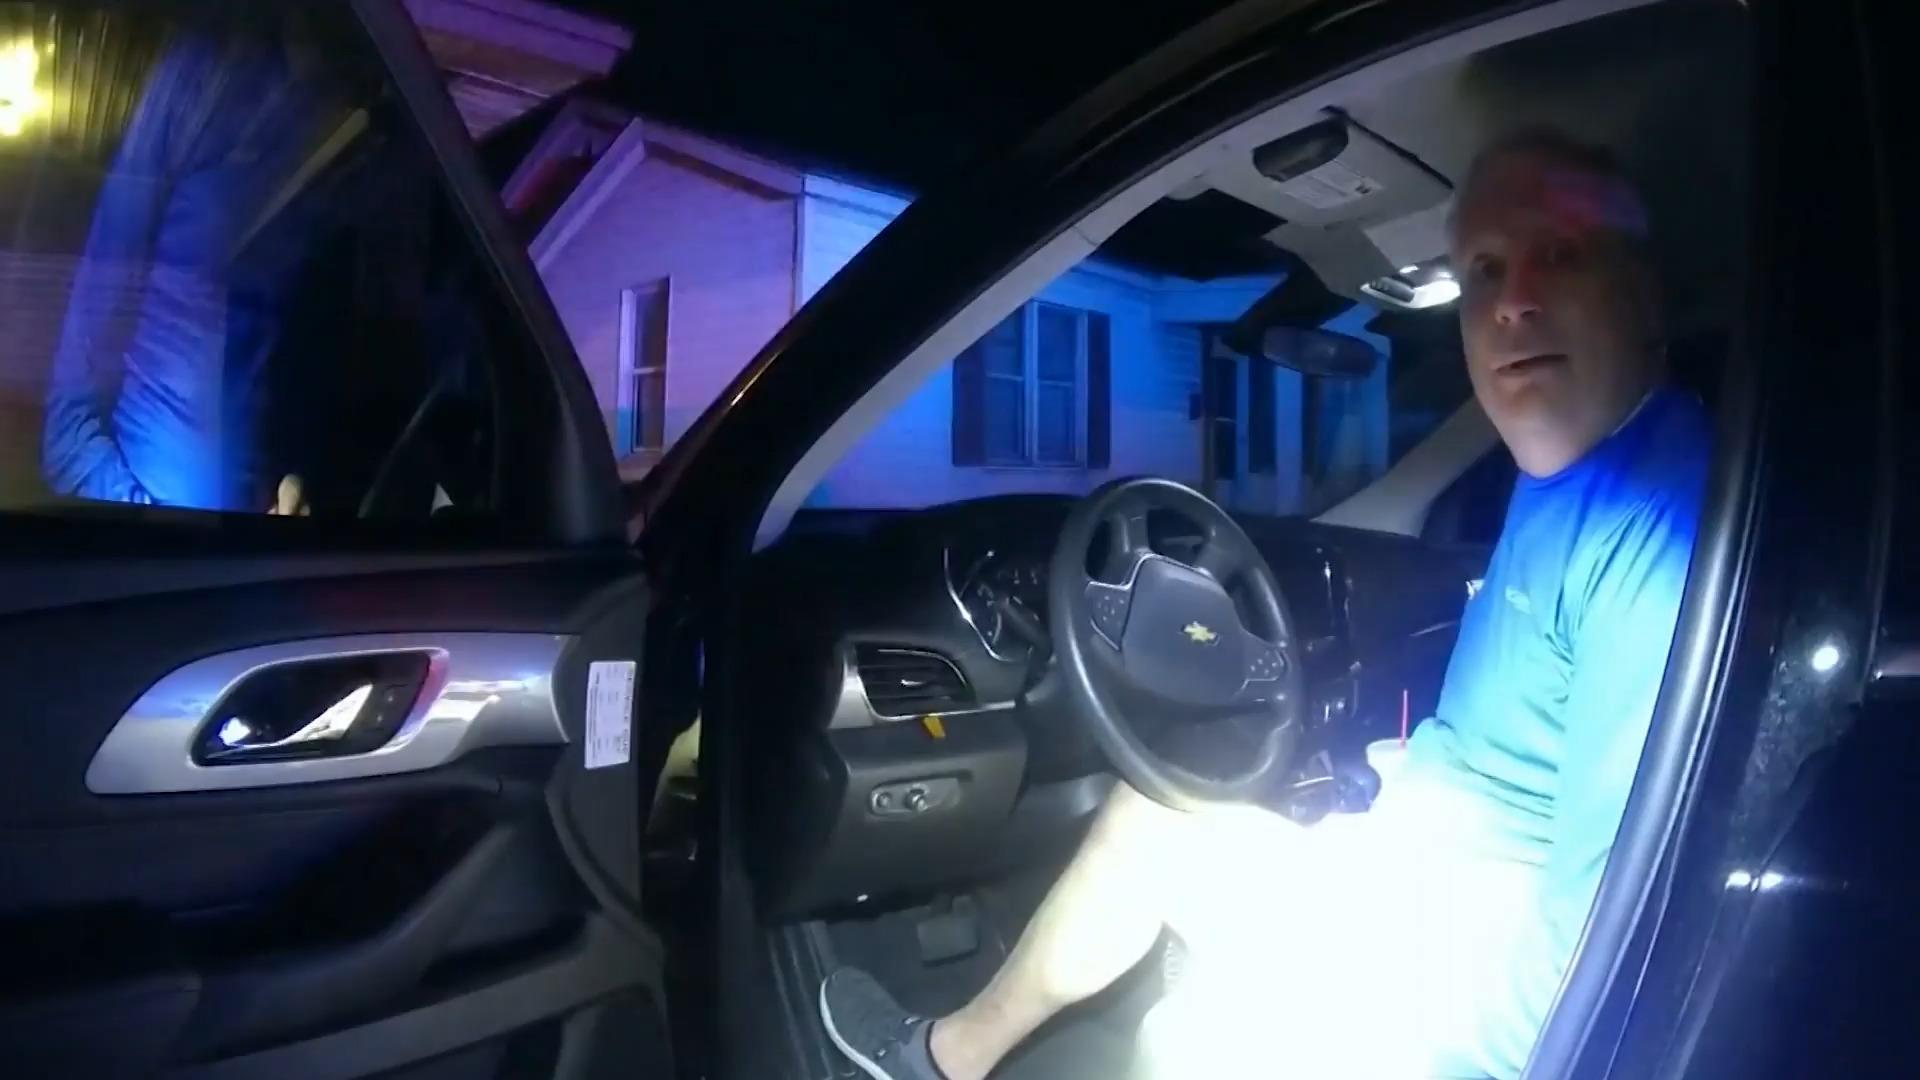 Polizeichef fährt betrunken Auto - und wird angehalten Vom Vorgesetzten erwischt